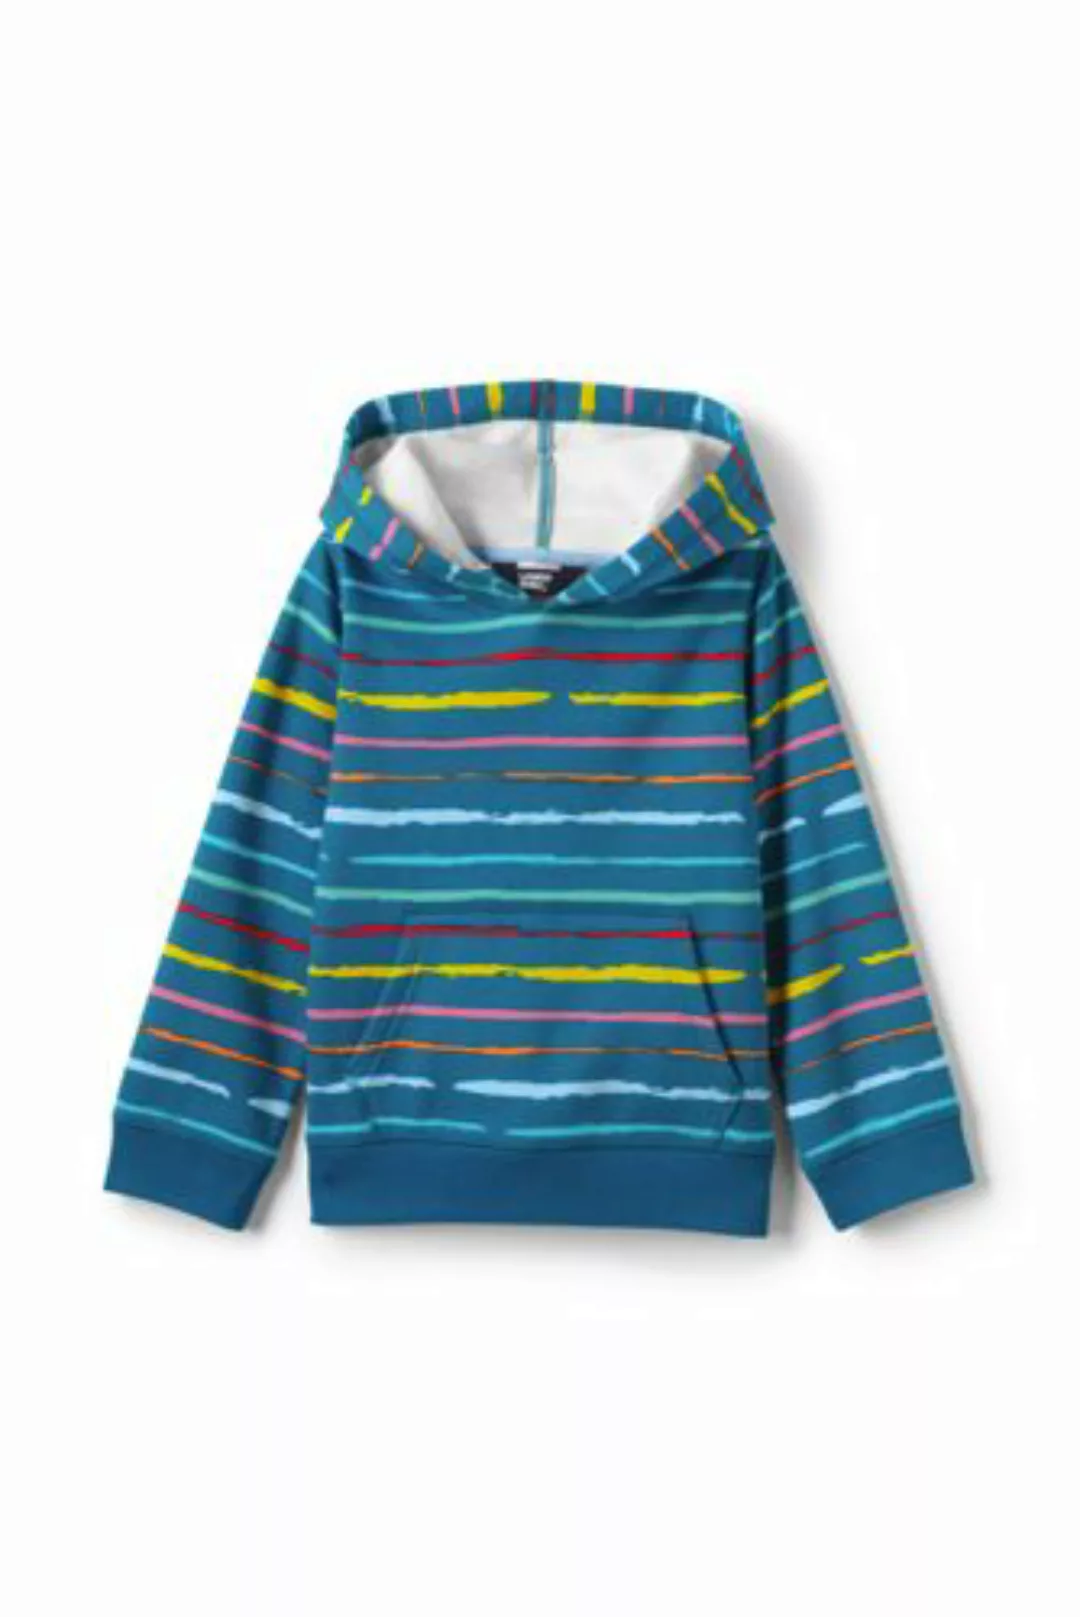 Sweatshirt-Hoodie, Größe: 152-164, Blau, Polyester, by Lands' End, Petrol P günstig online kaufen